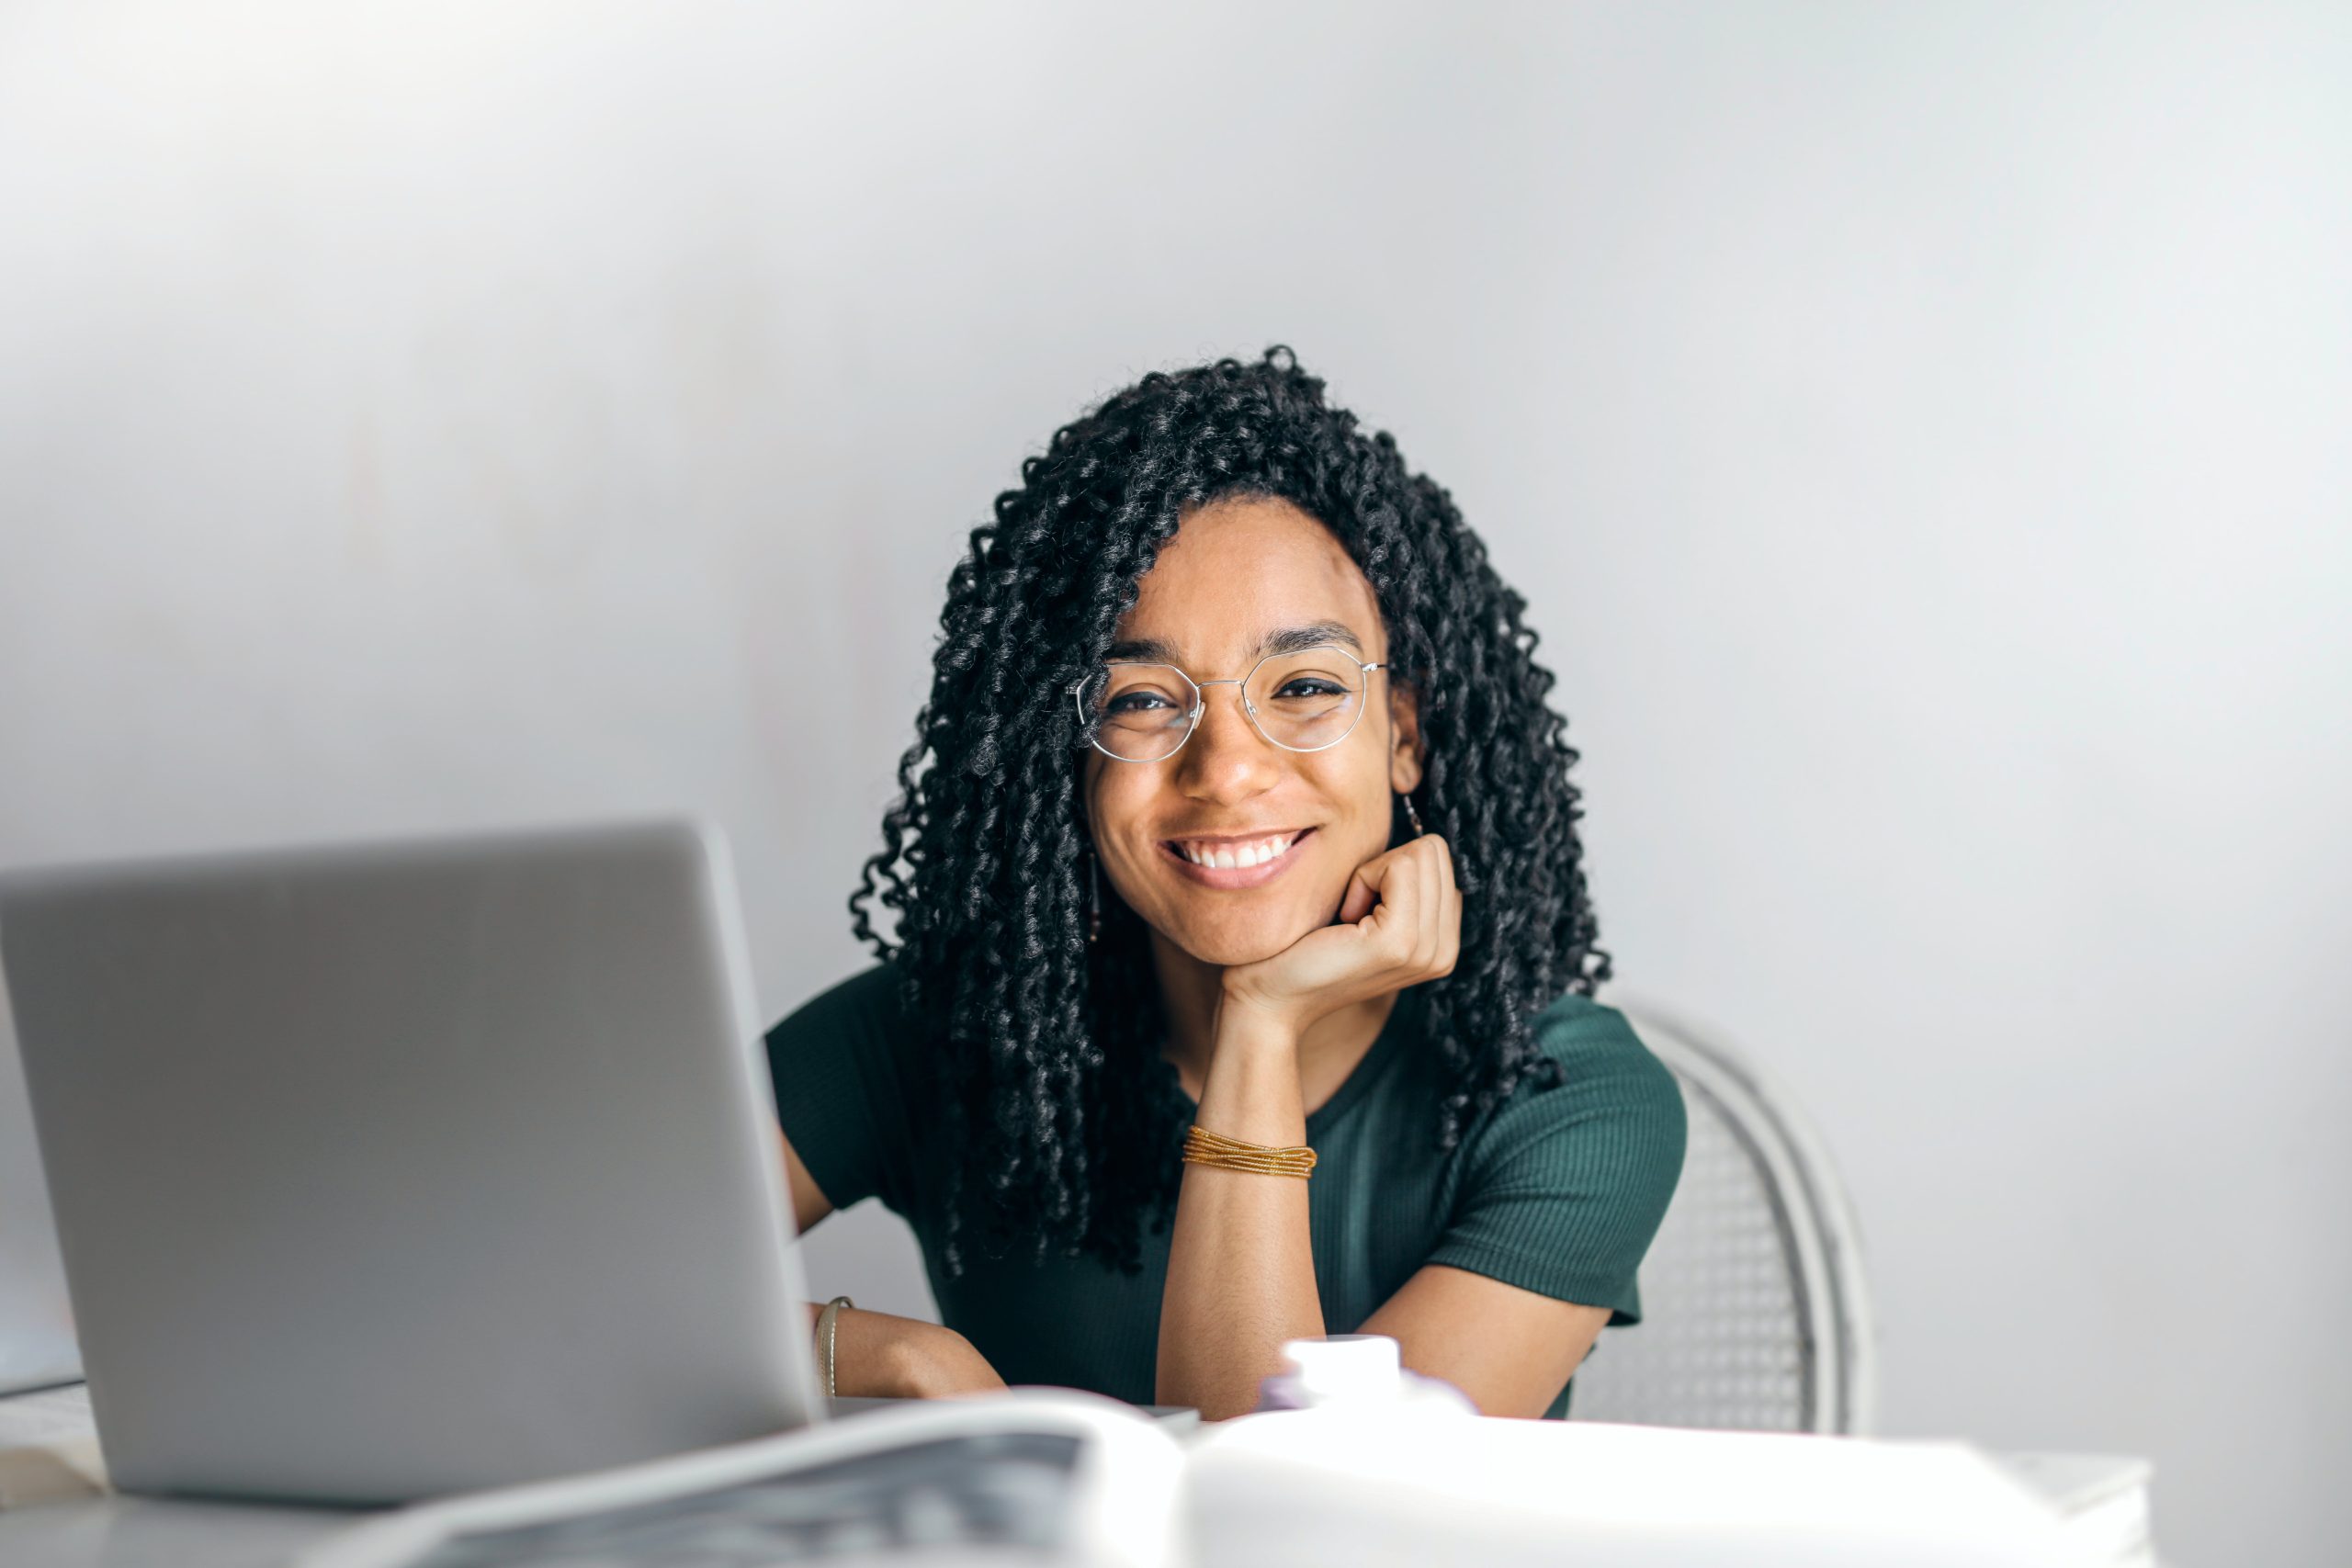 Femme assise devant son ordinateur en train de sourire.